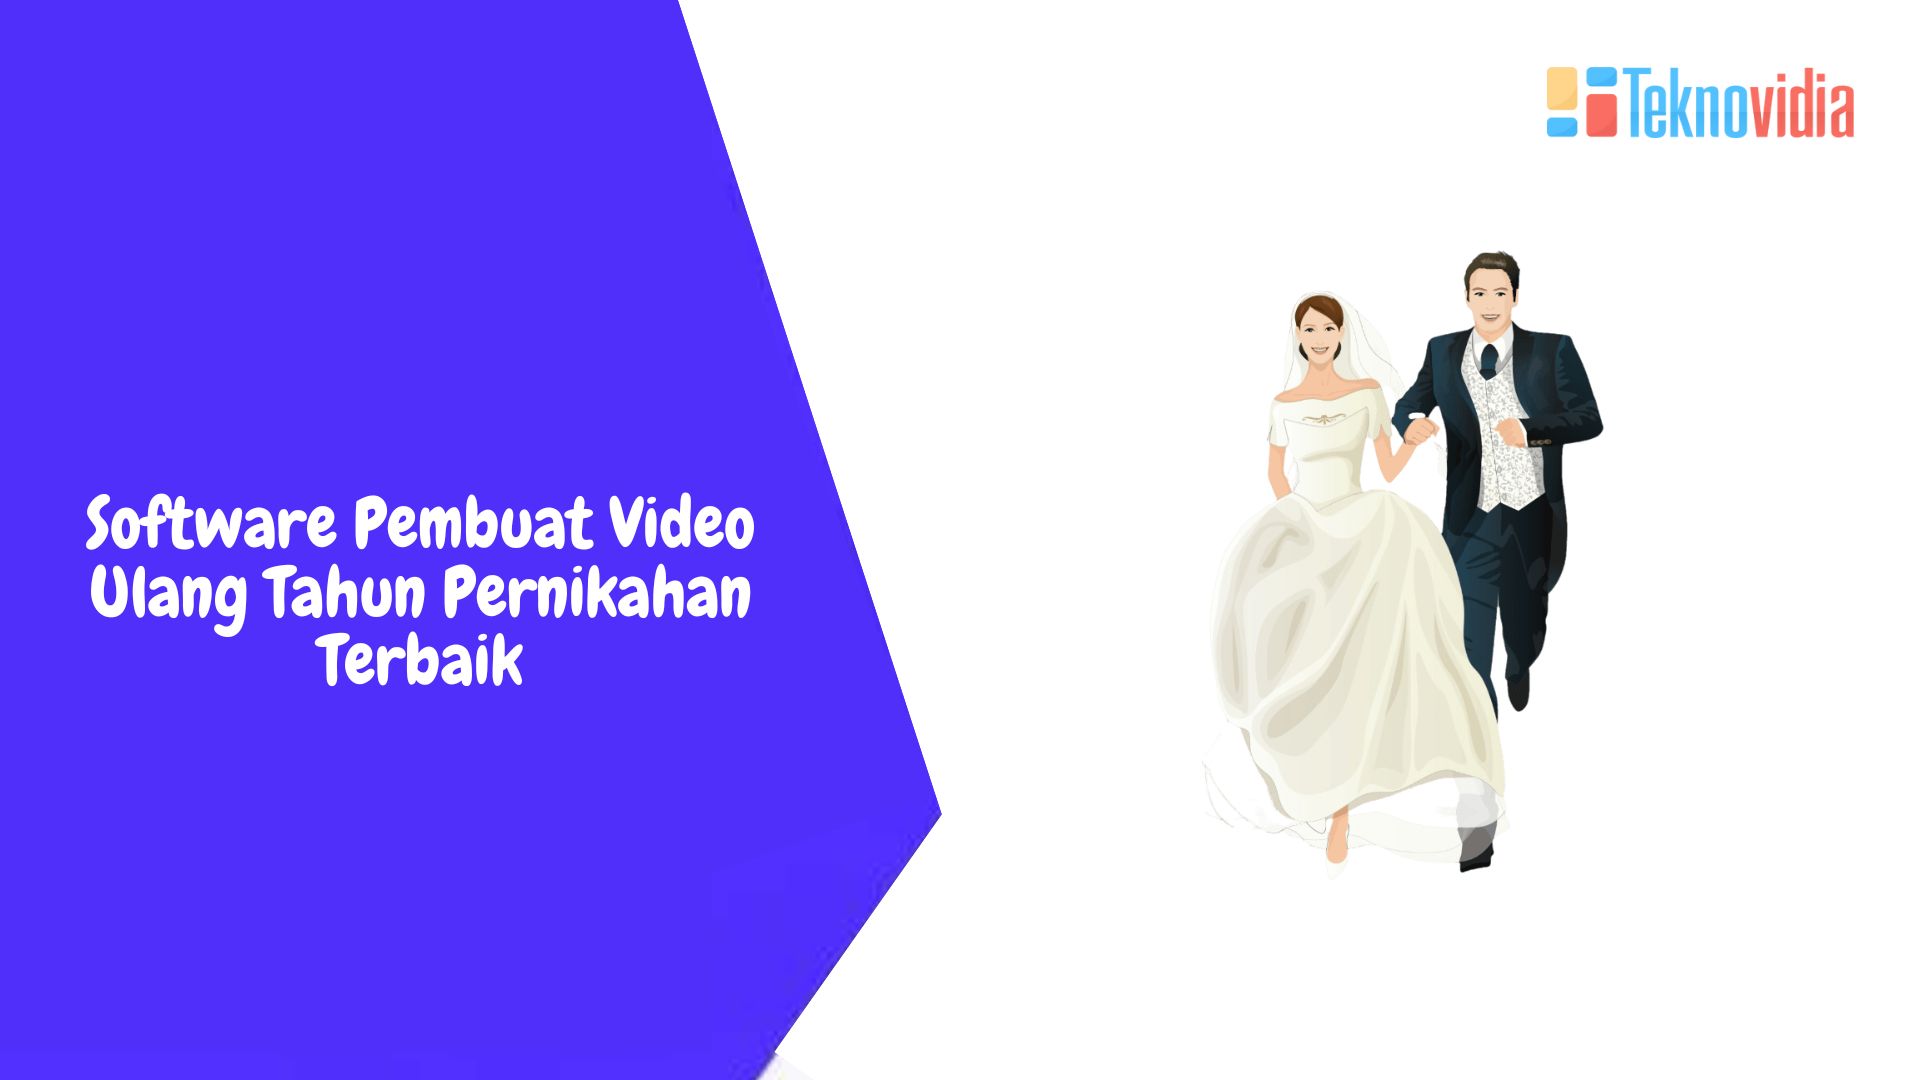 Software Pembuat Video Ulang Tahun Pernikahan Terbaik